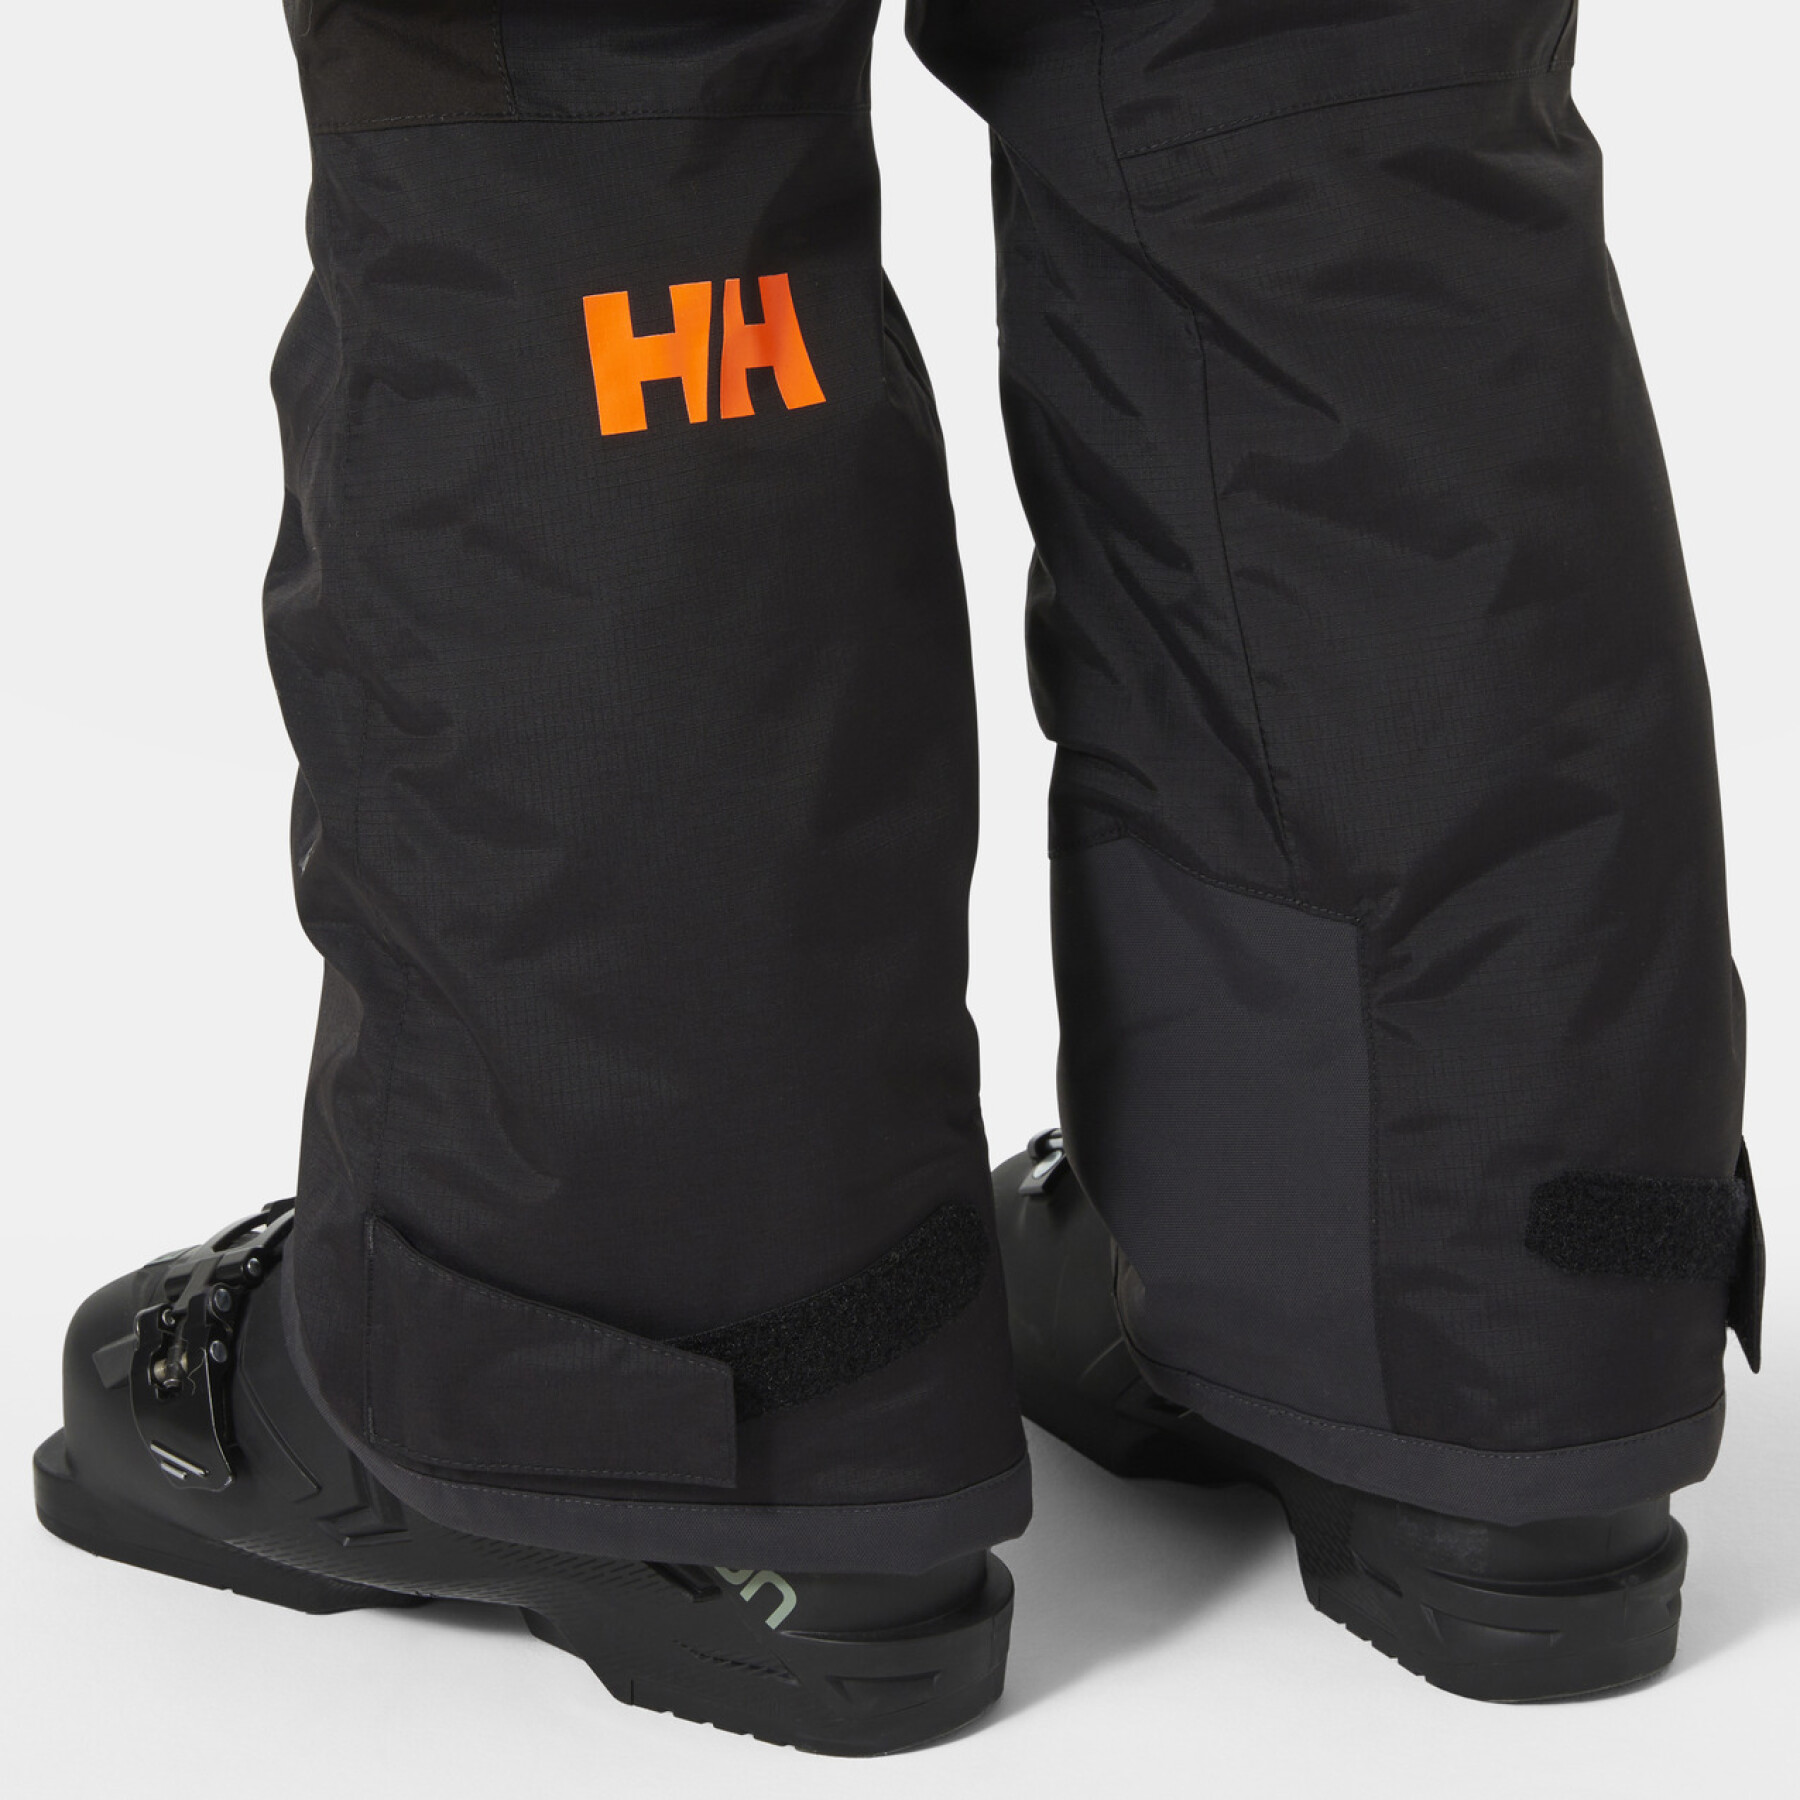 Spodnie narciarskie dla dzieci Helly Hansen no limits 2.0